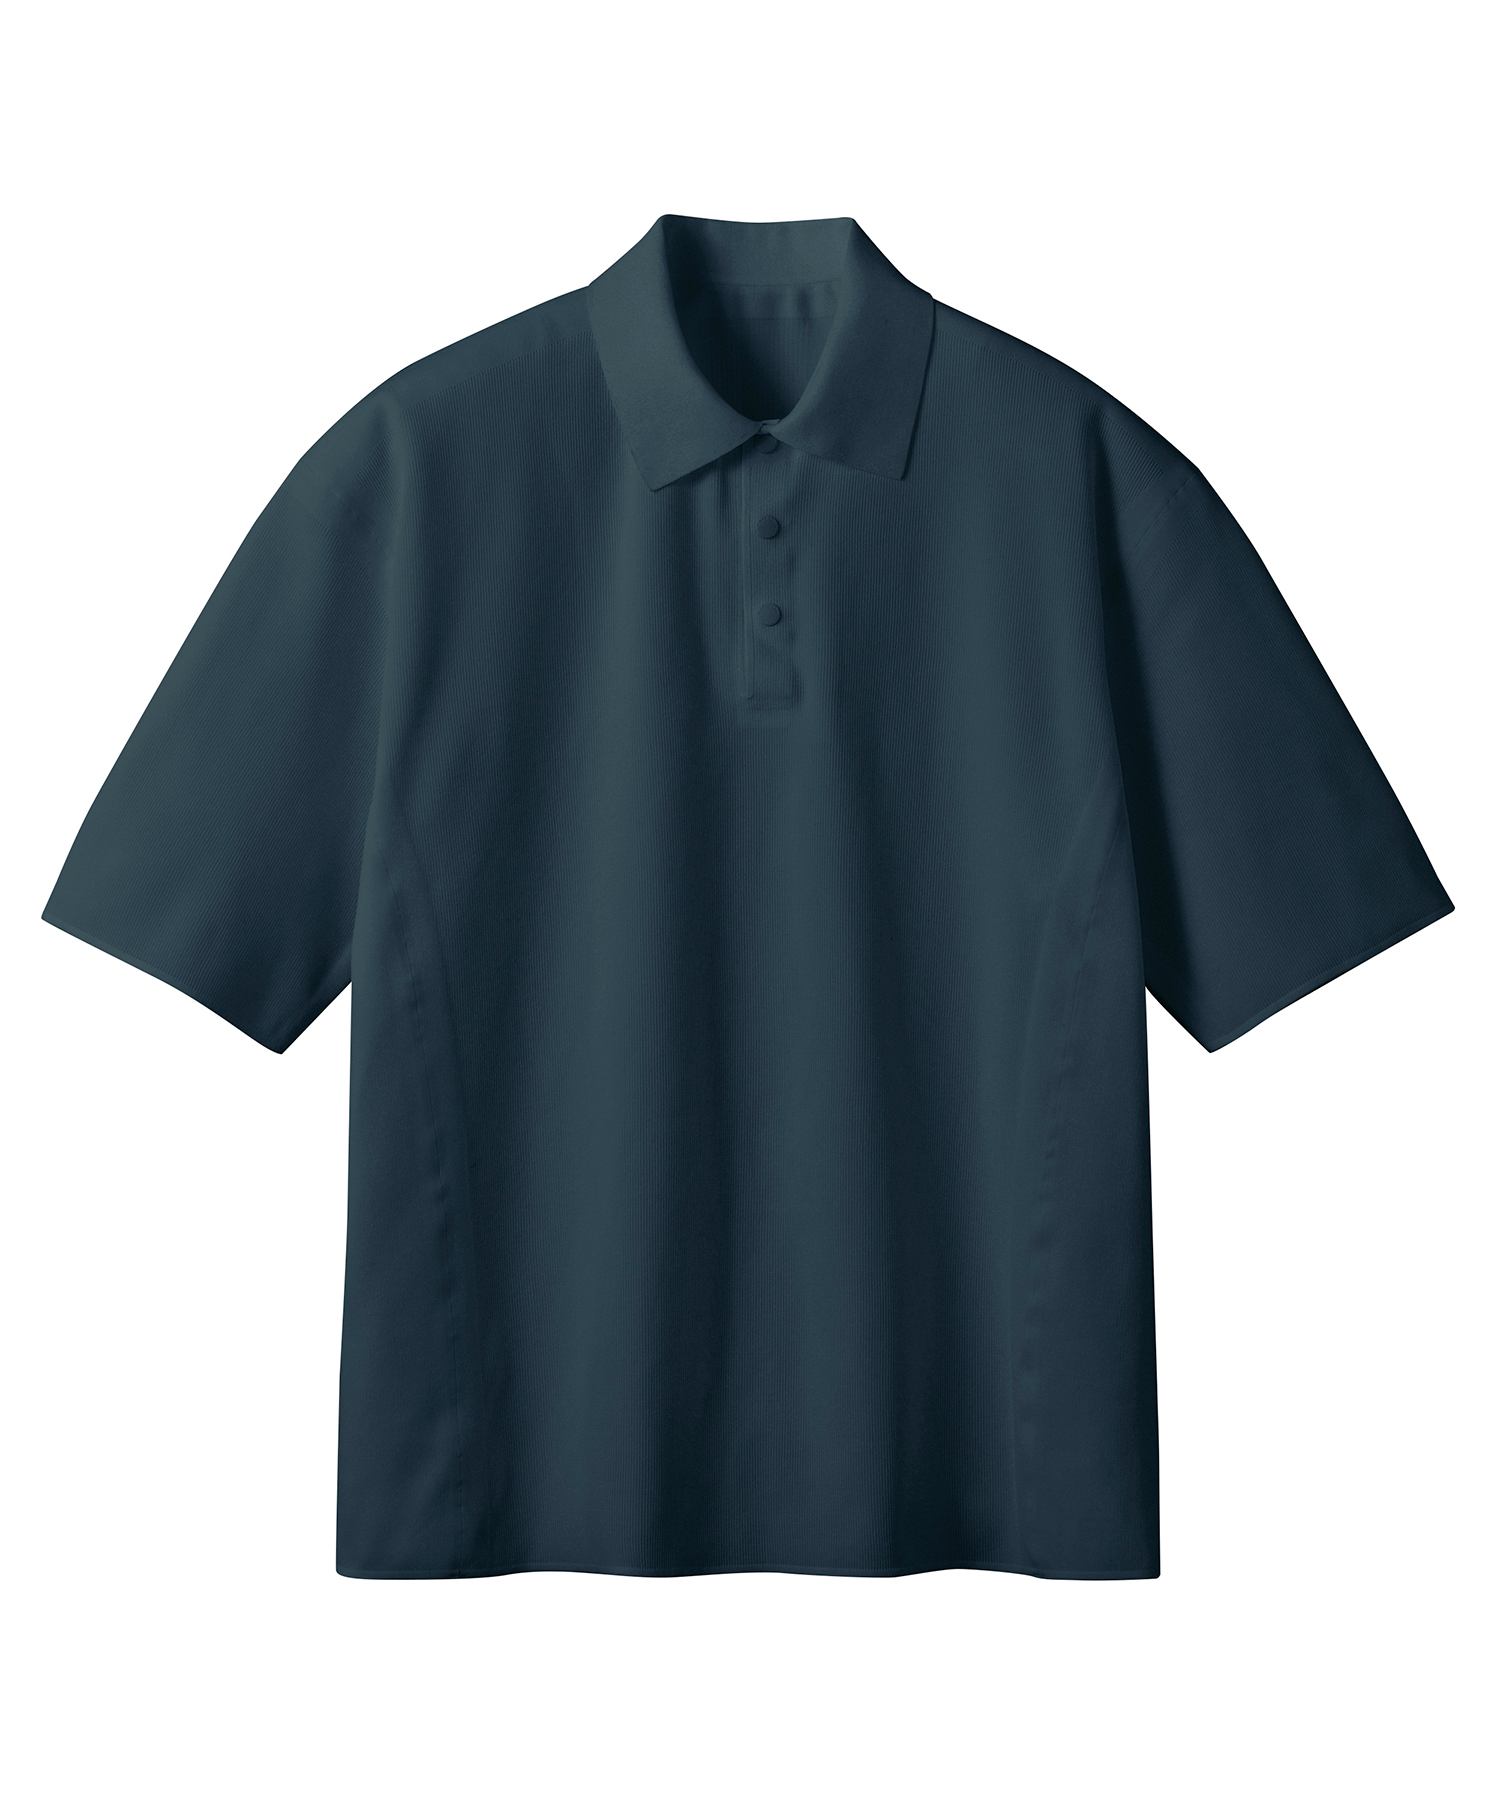 注目ショップ・ブランドのギフト デサント ポロシャツ ７枚セット 